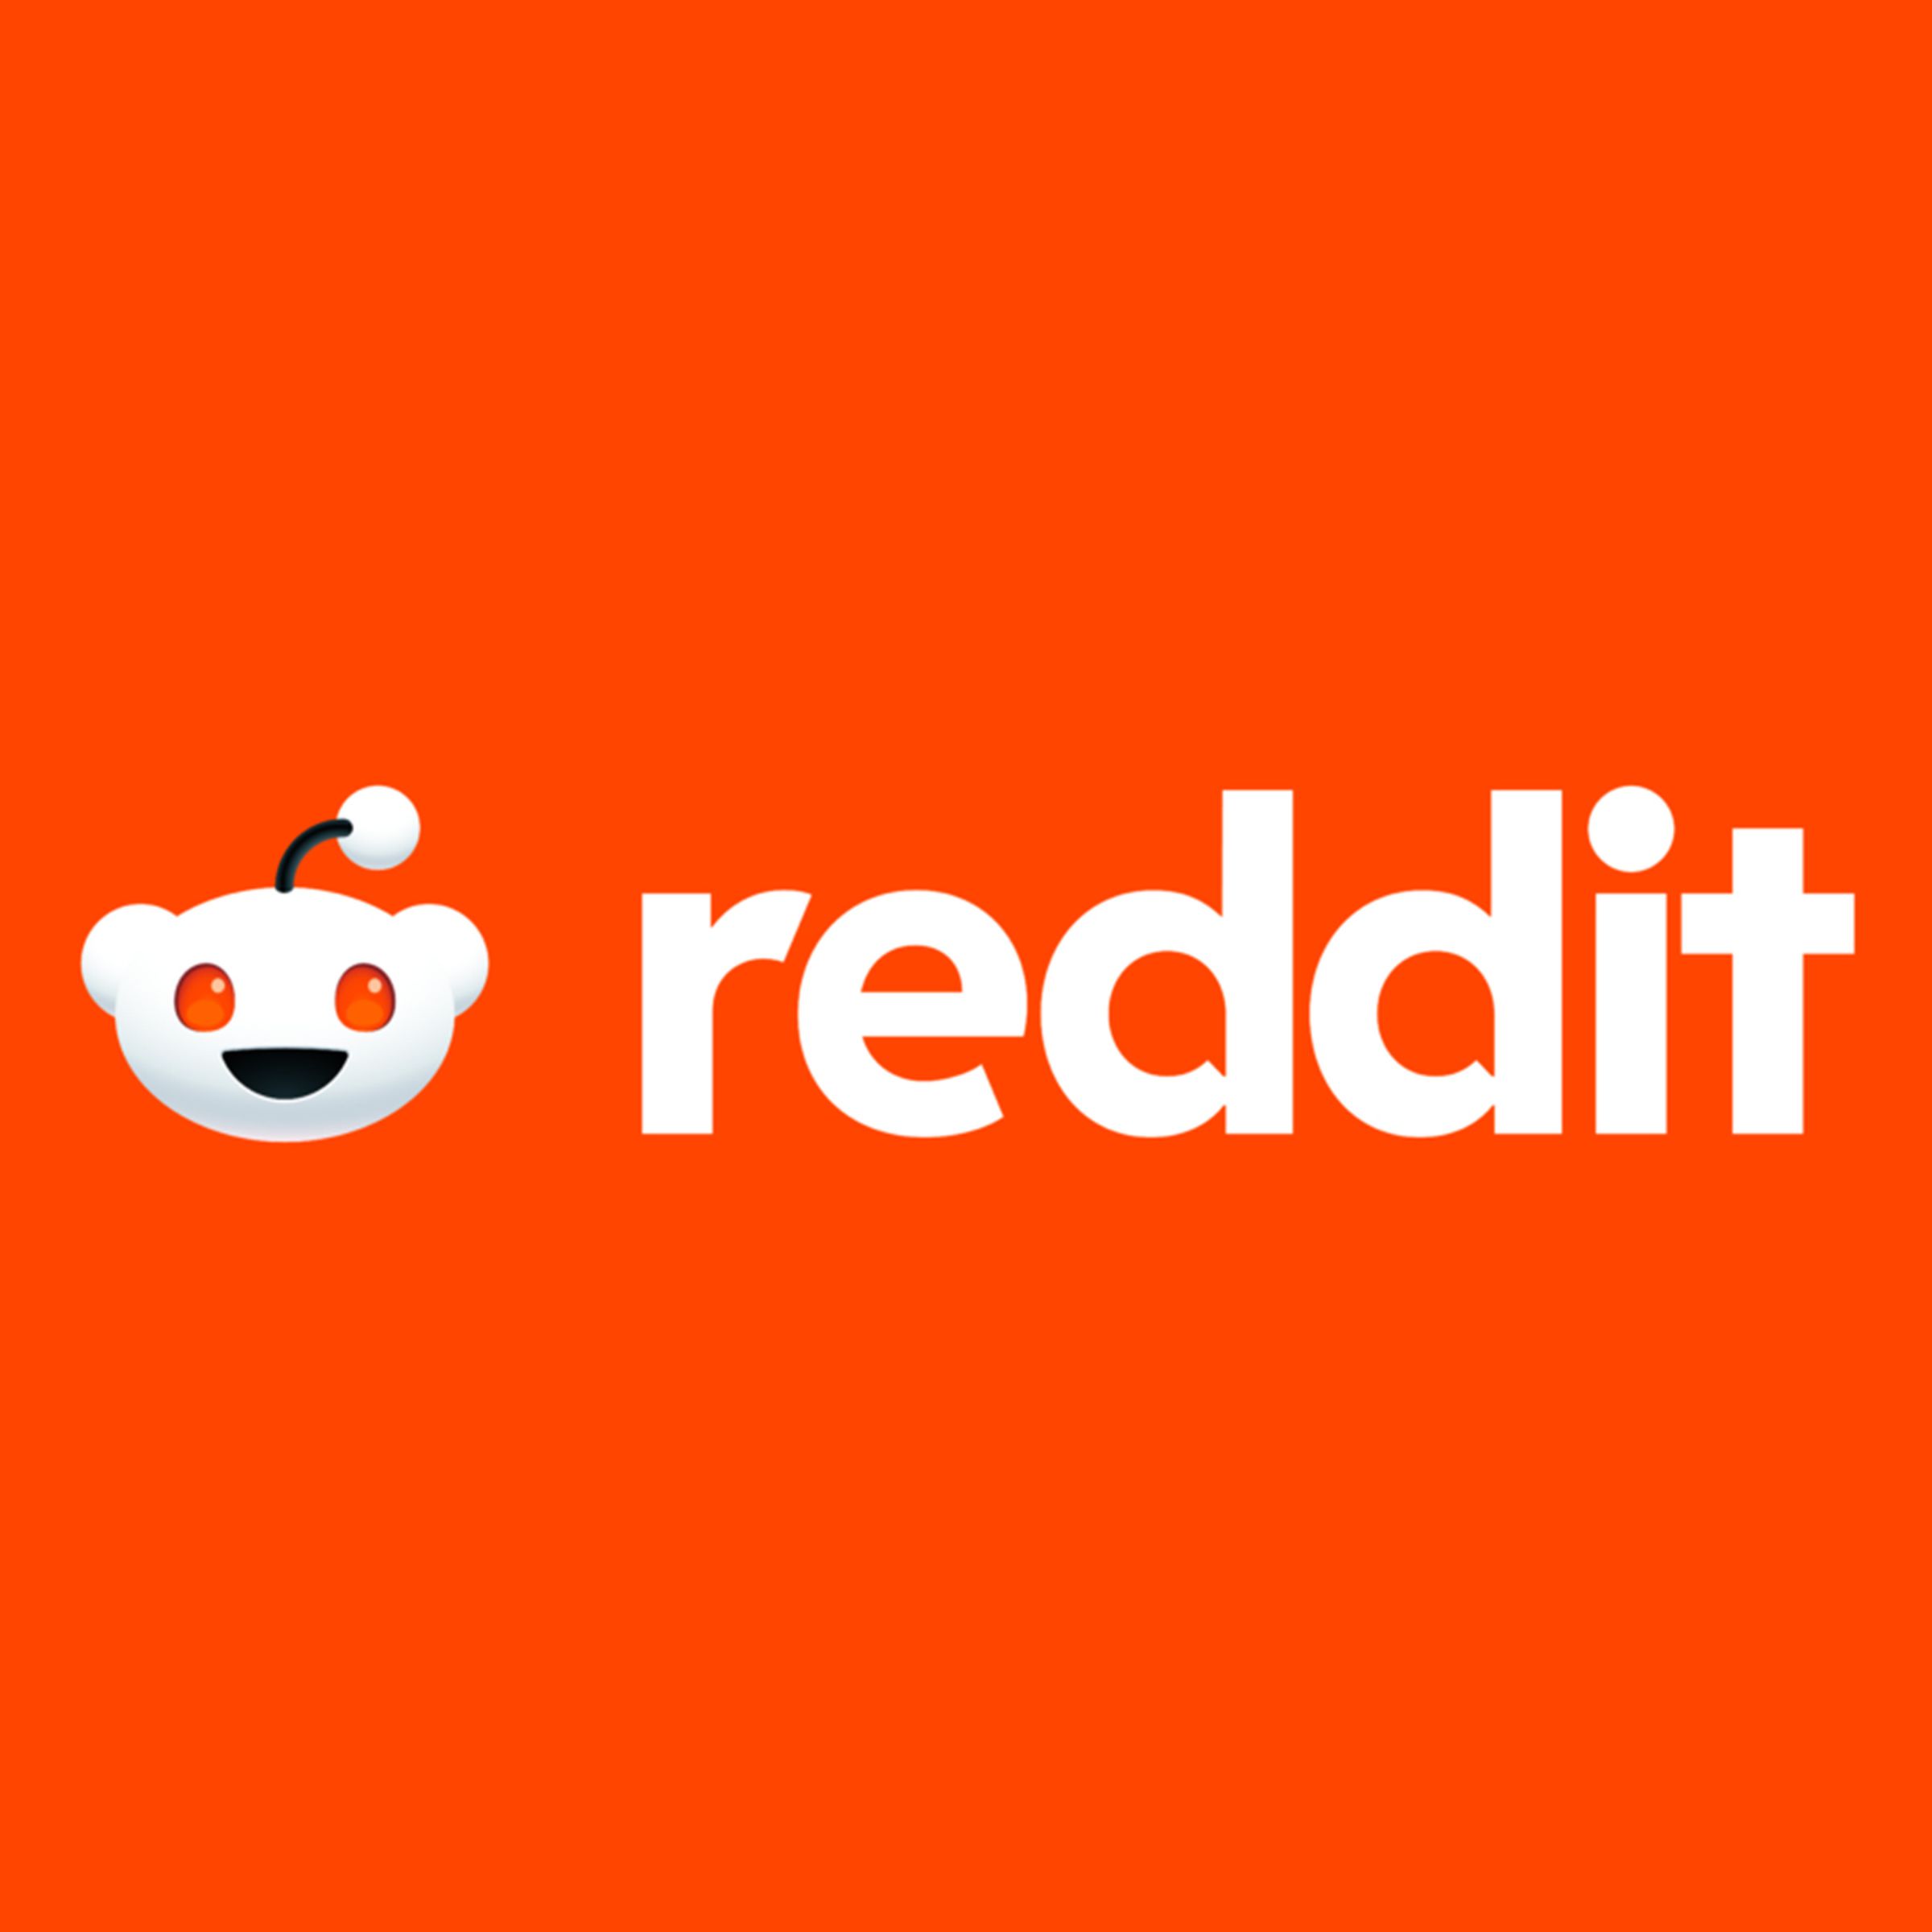 Image of the Reddit logo on a red-orange background.